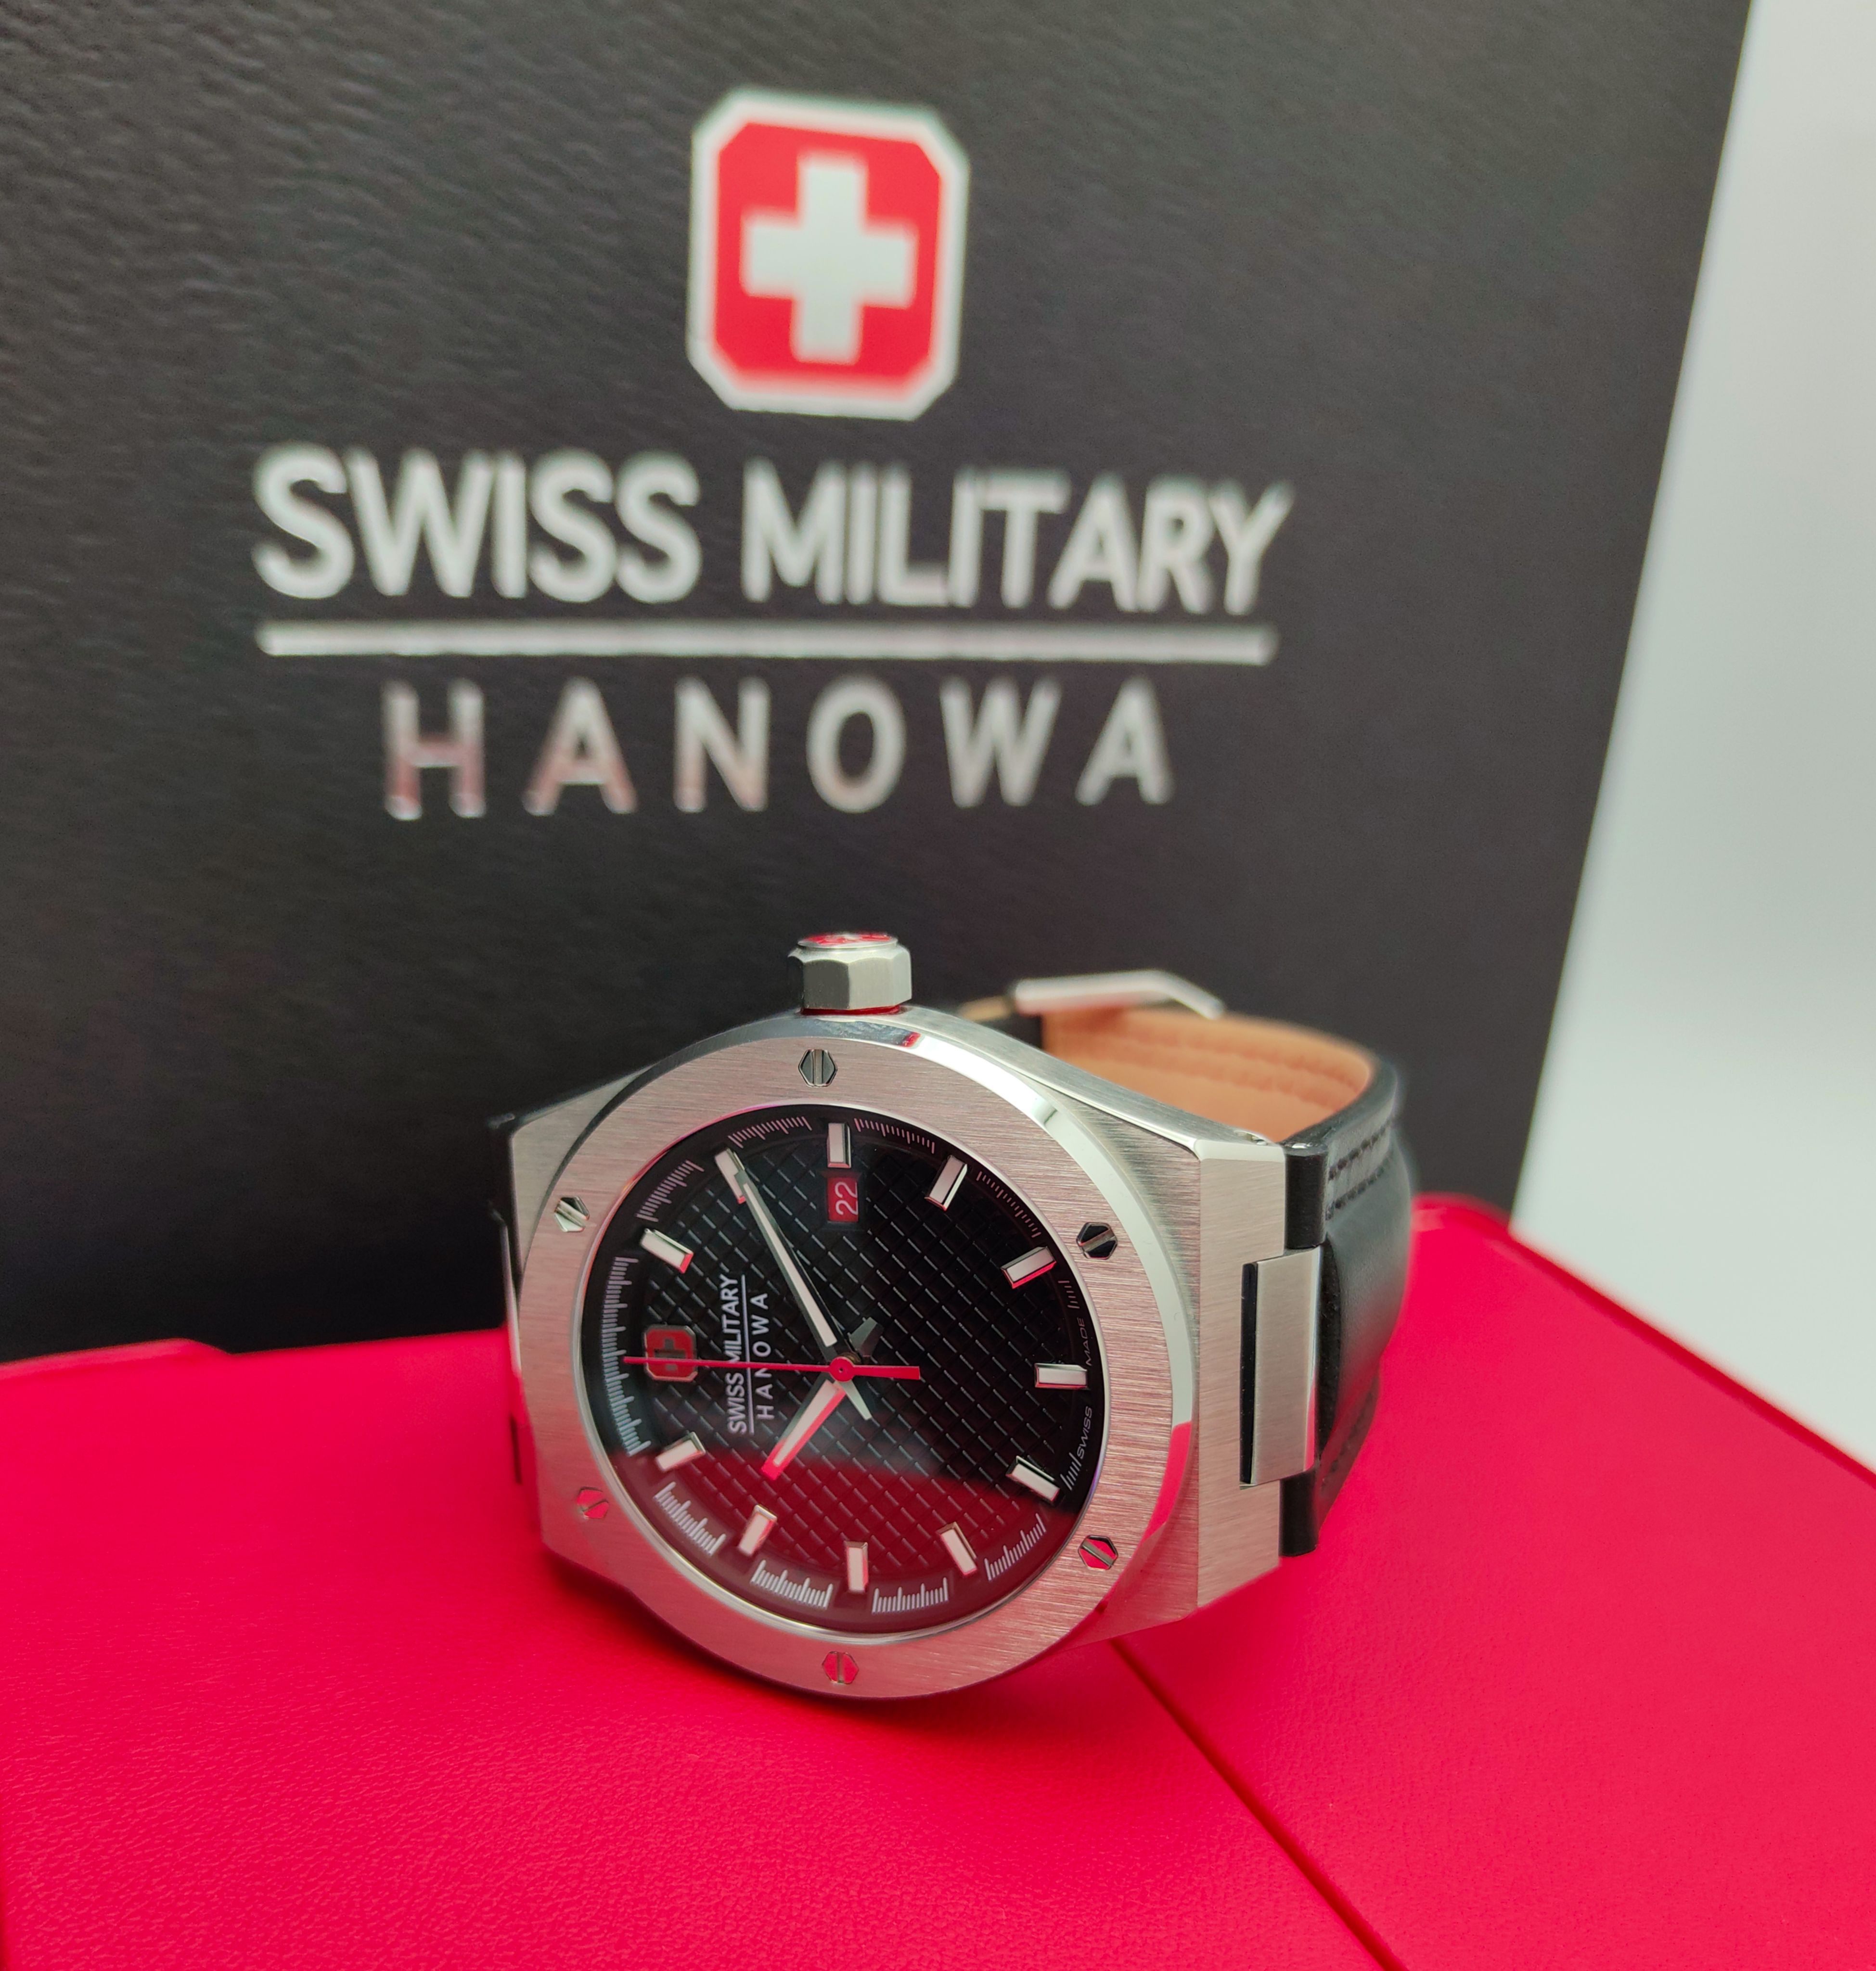 Swiss Оригинальные с Часы купить часы. часы - доставкой наручные для ценам интернет-магазине (1317689605) производства мужчин OZON выгодным Hanowa мужские наручные Кварцевые по в Швейцарии Military Sidewinder SMWGB2101601.